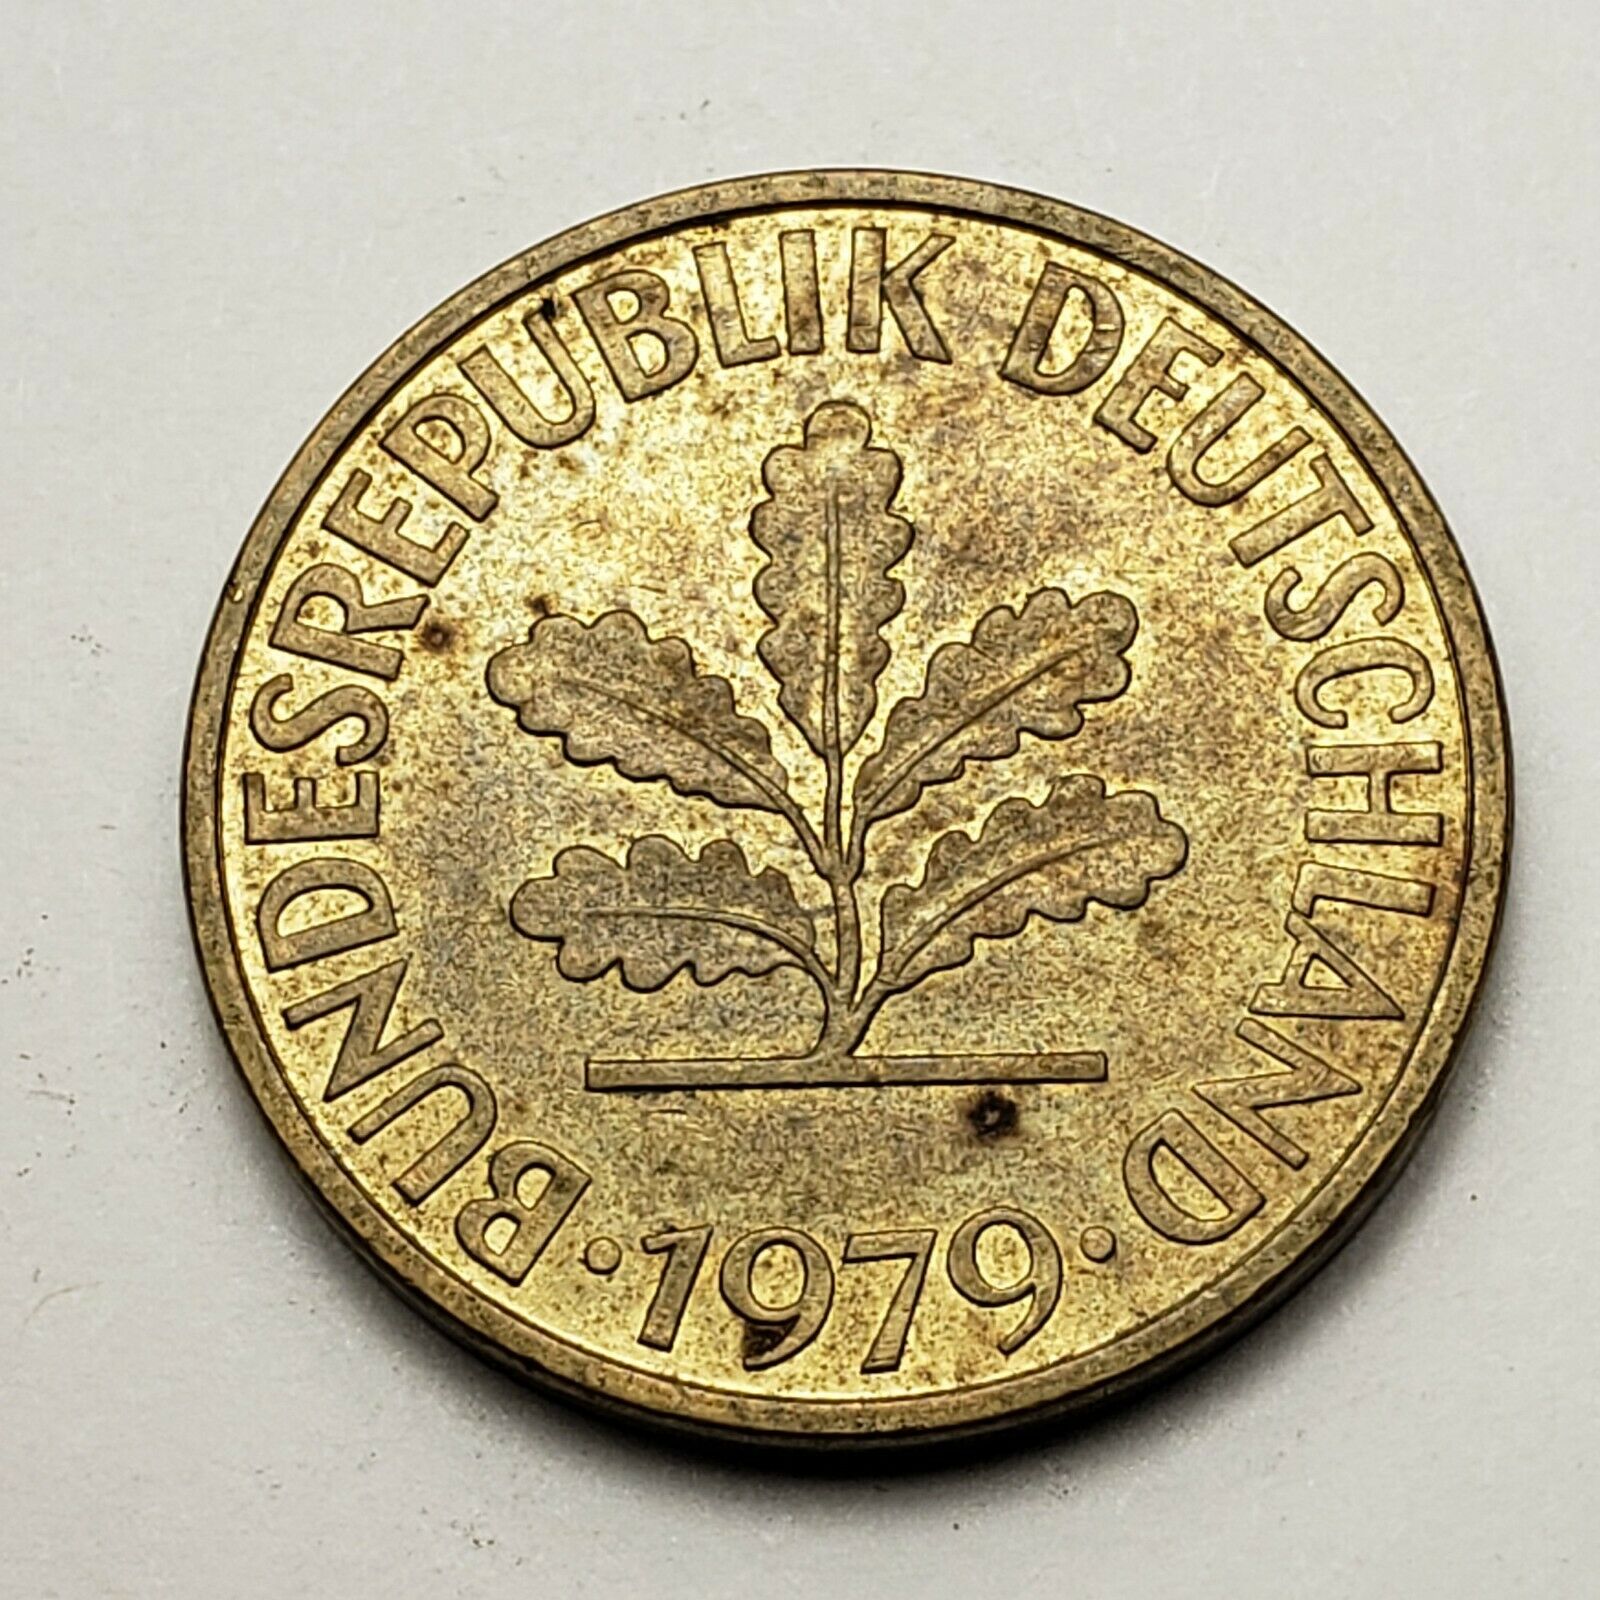 1979 G Germany 10 Pfennig, Karlsruhe Mint, Km# 108